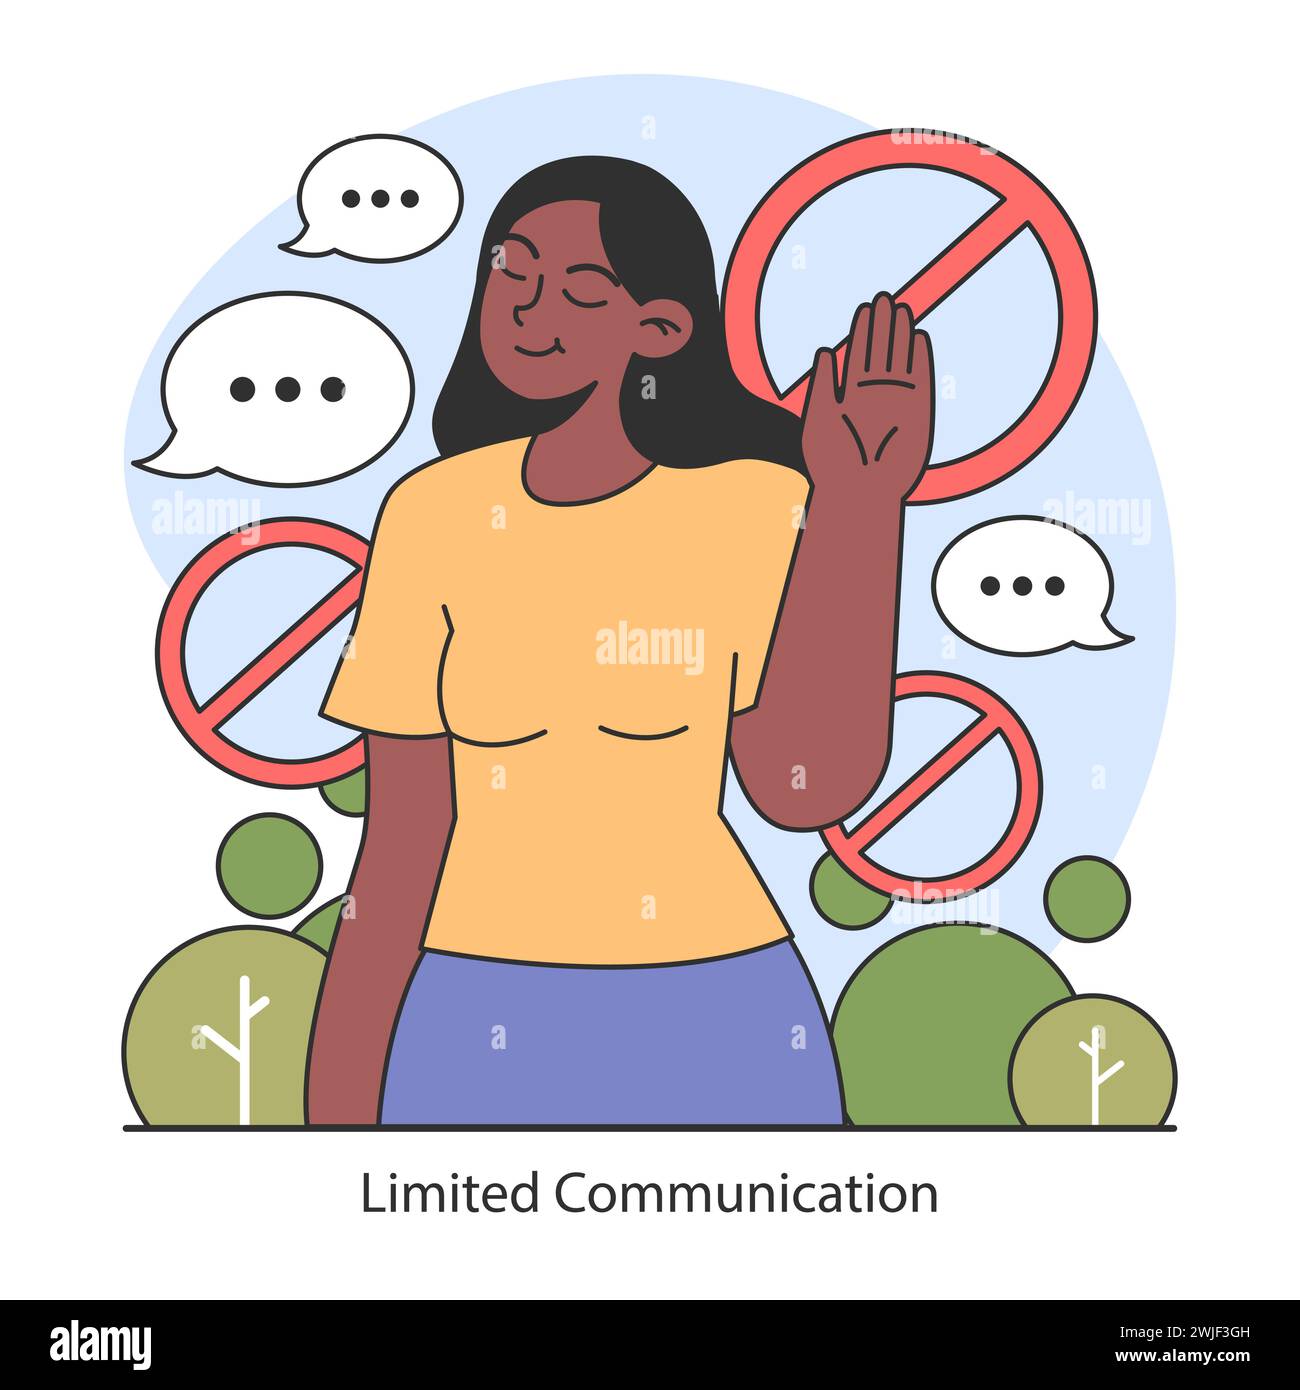 Concetto di digiuno dopamina. Illustrazione di una donna che gestiva "no" a una comunicazione eccessiva, promuovendo un'interazione mirata e consapevole. Illustrazione vettoriale piatta. Illustrazione Vettoriale